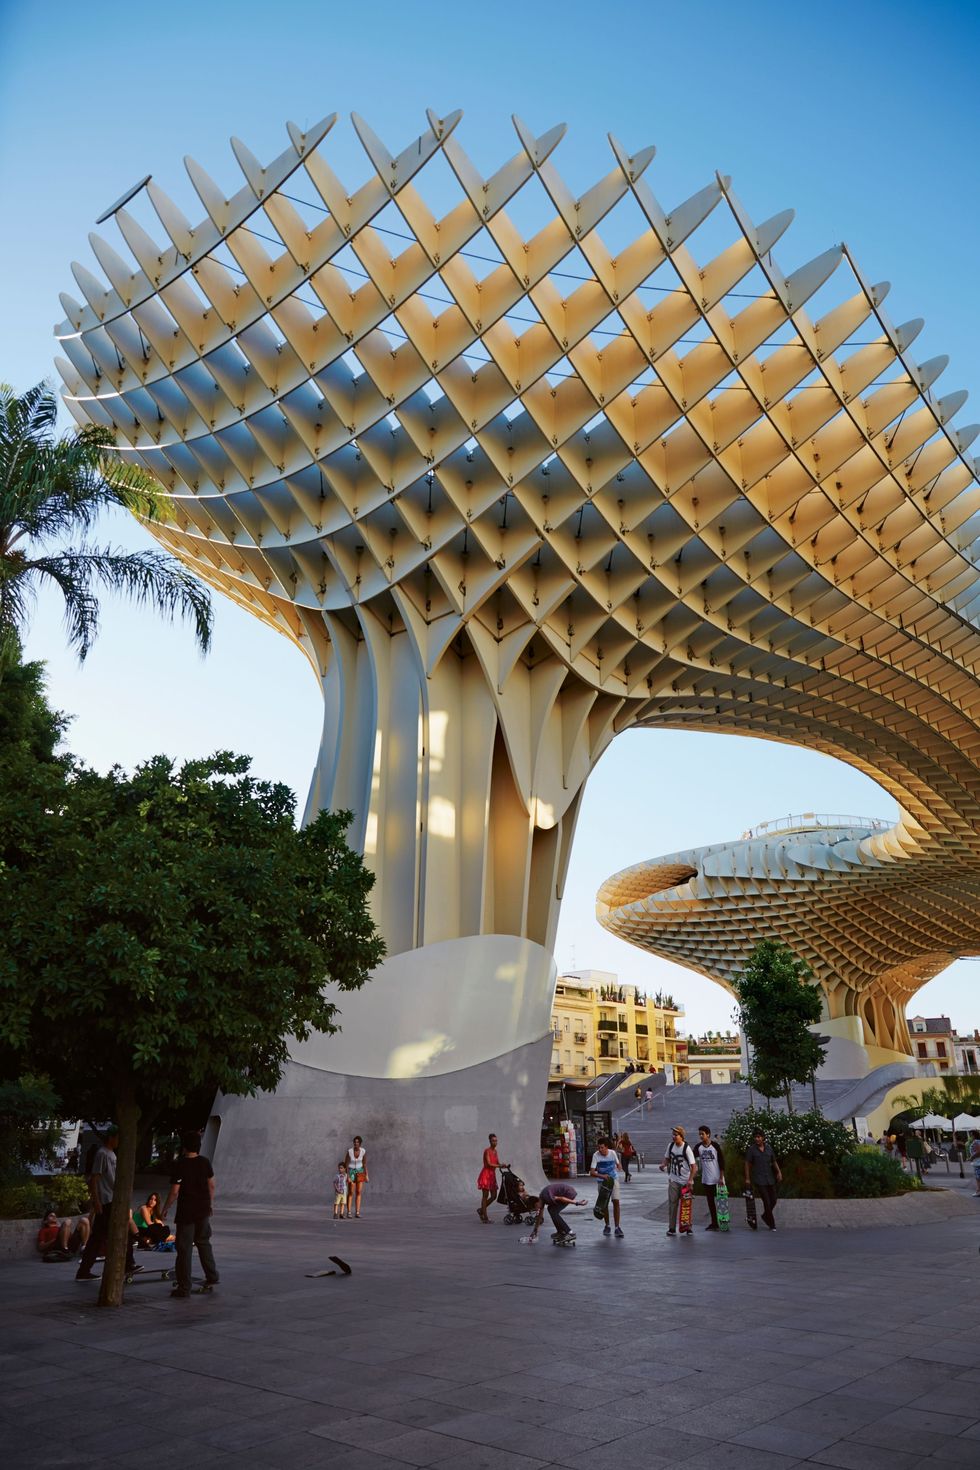 De Metropol Parasol het grootste houten bouwwerk ter wereld bepaalt de skyline van Sevilla